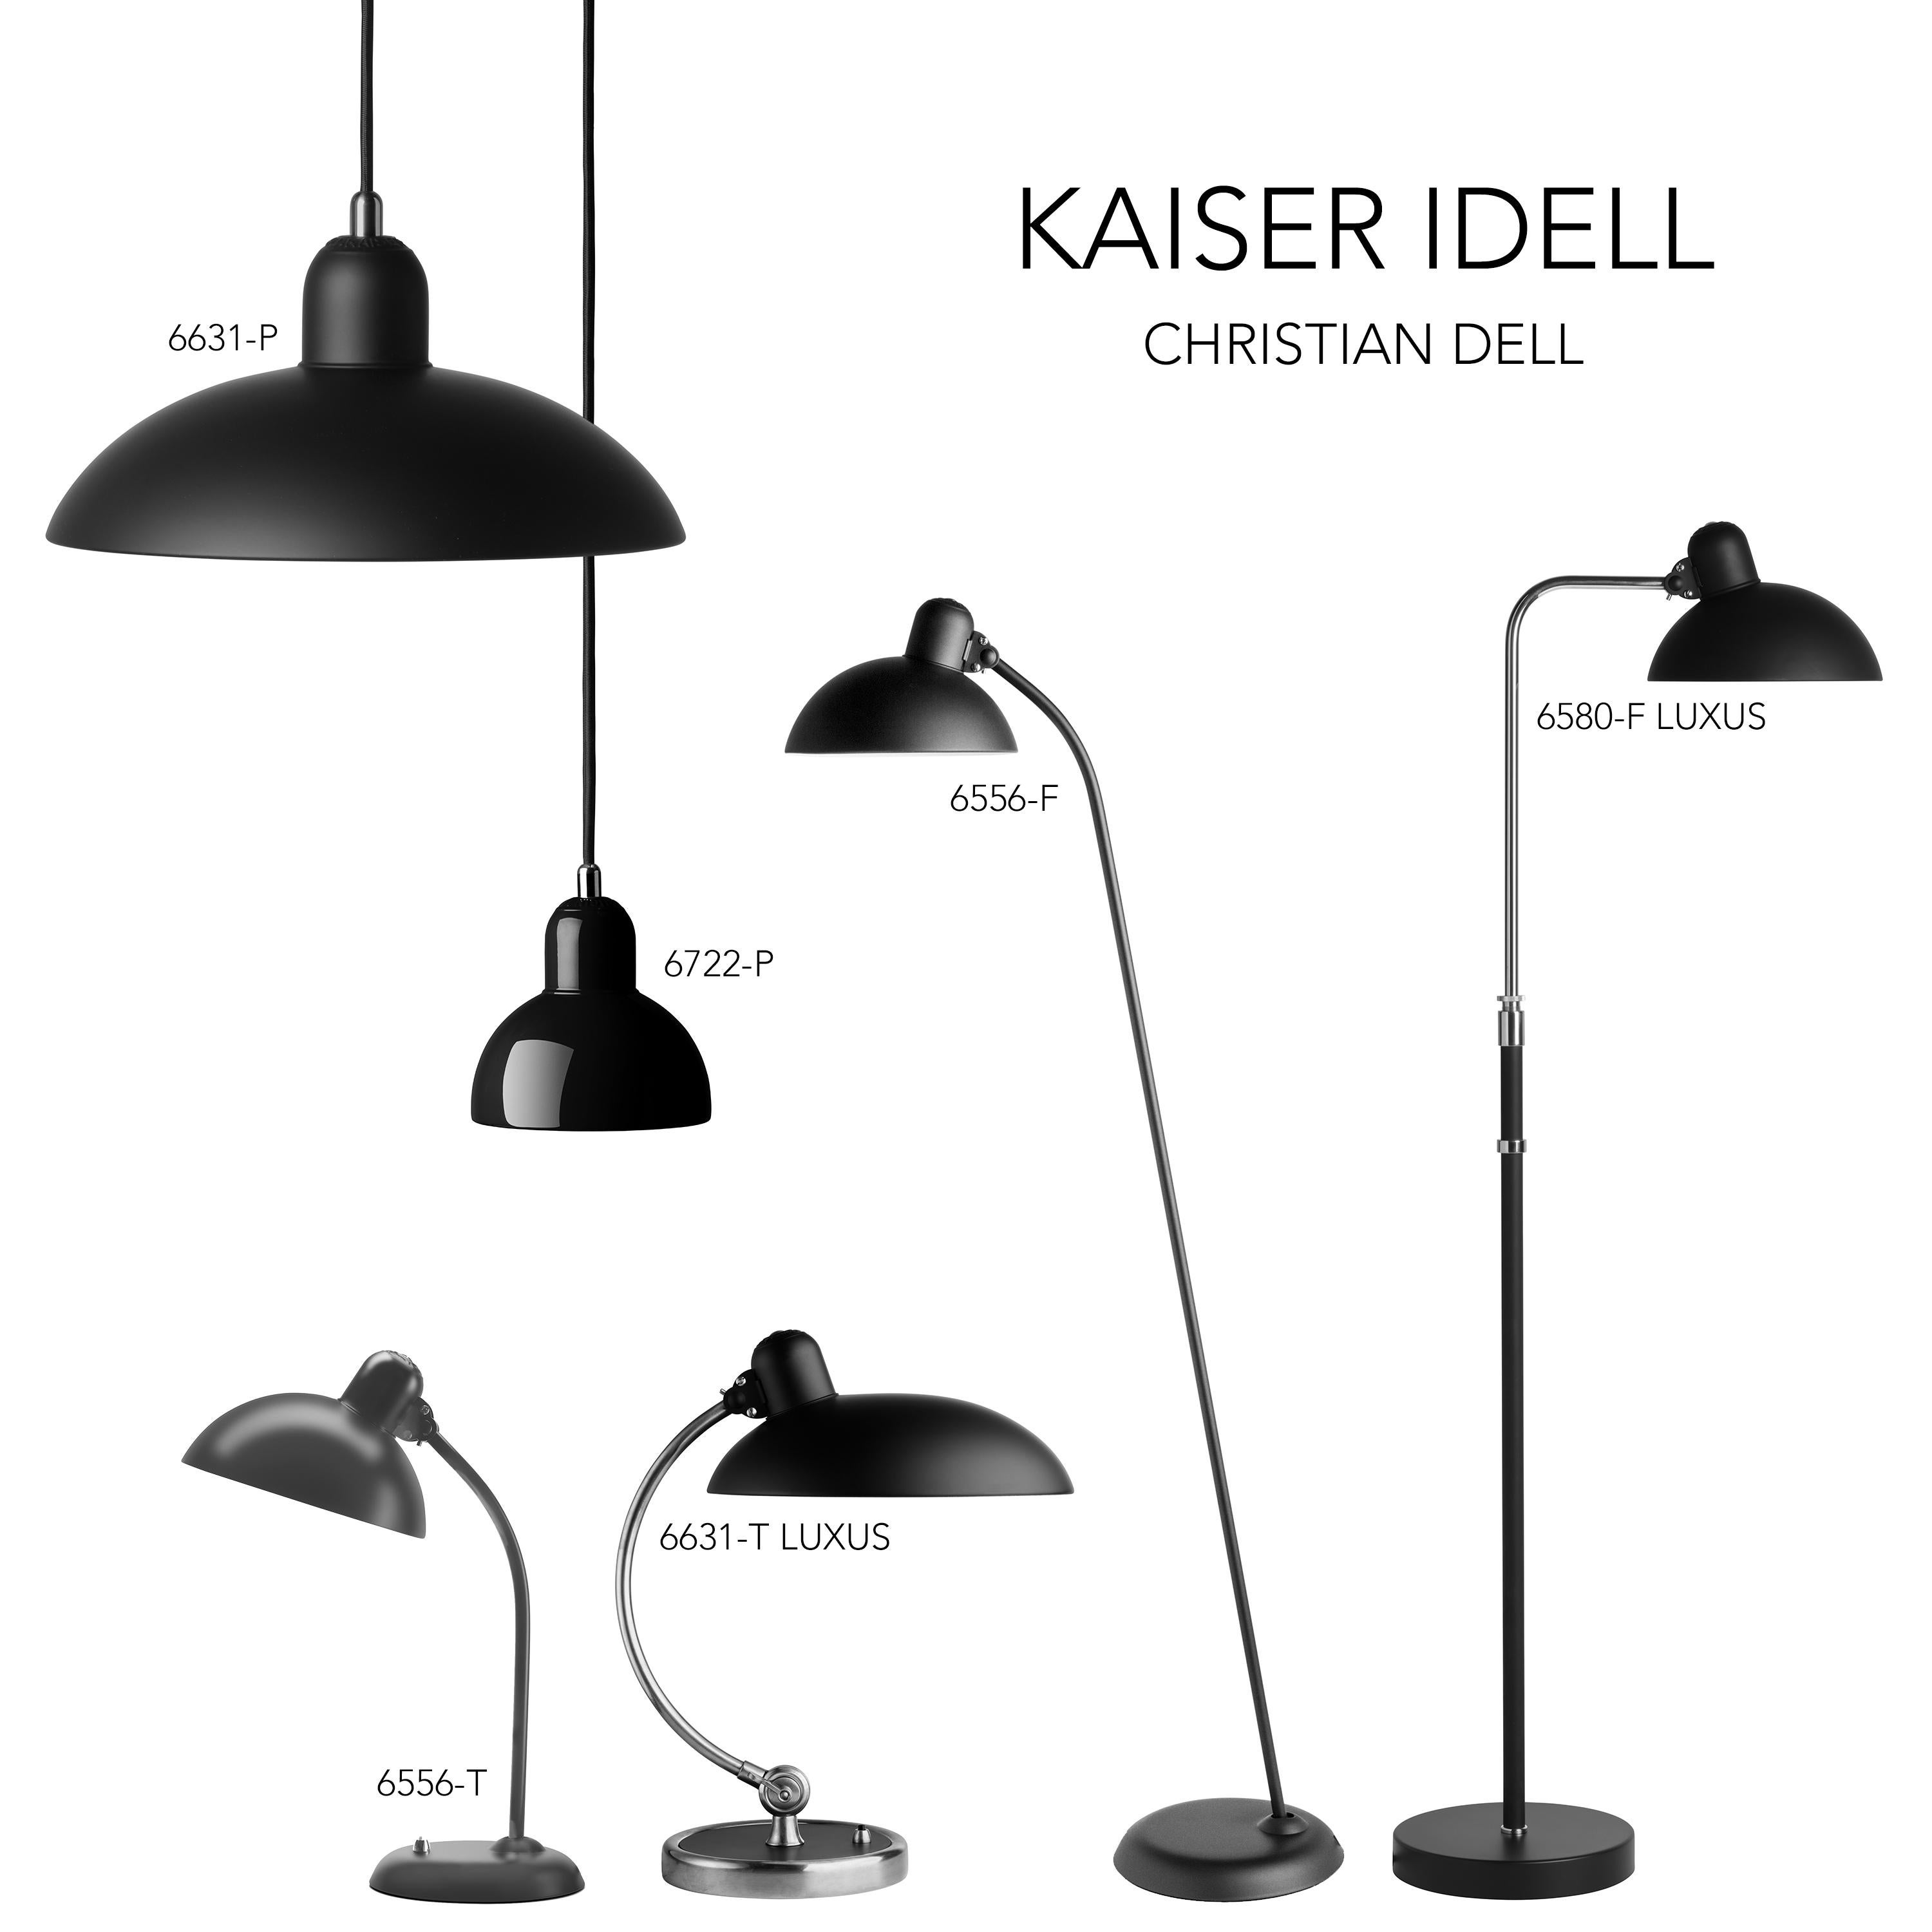 Christian Dell 'Kaiser Idell 6631-P' Pendant for Fritz Hansen in Ruby Red For Sale 8